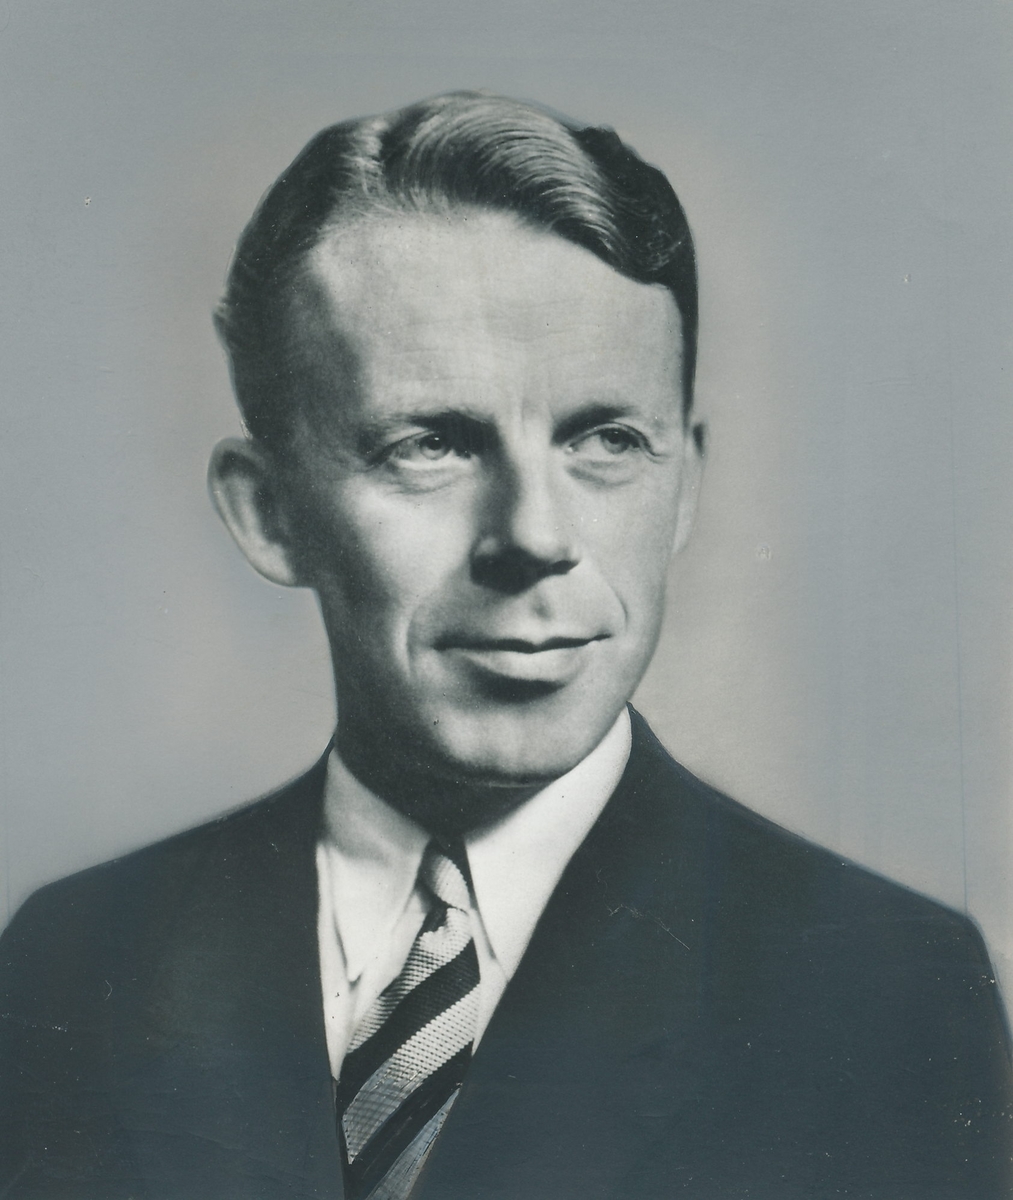 Portrett av mann i 50-årsalderen, iført dressjakke, skjorte og stripete slips.